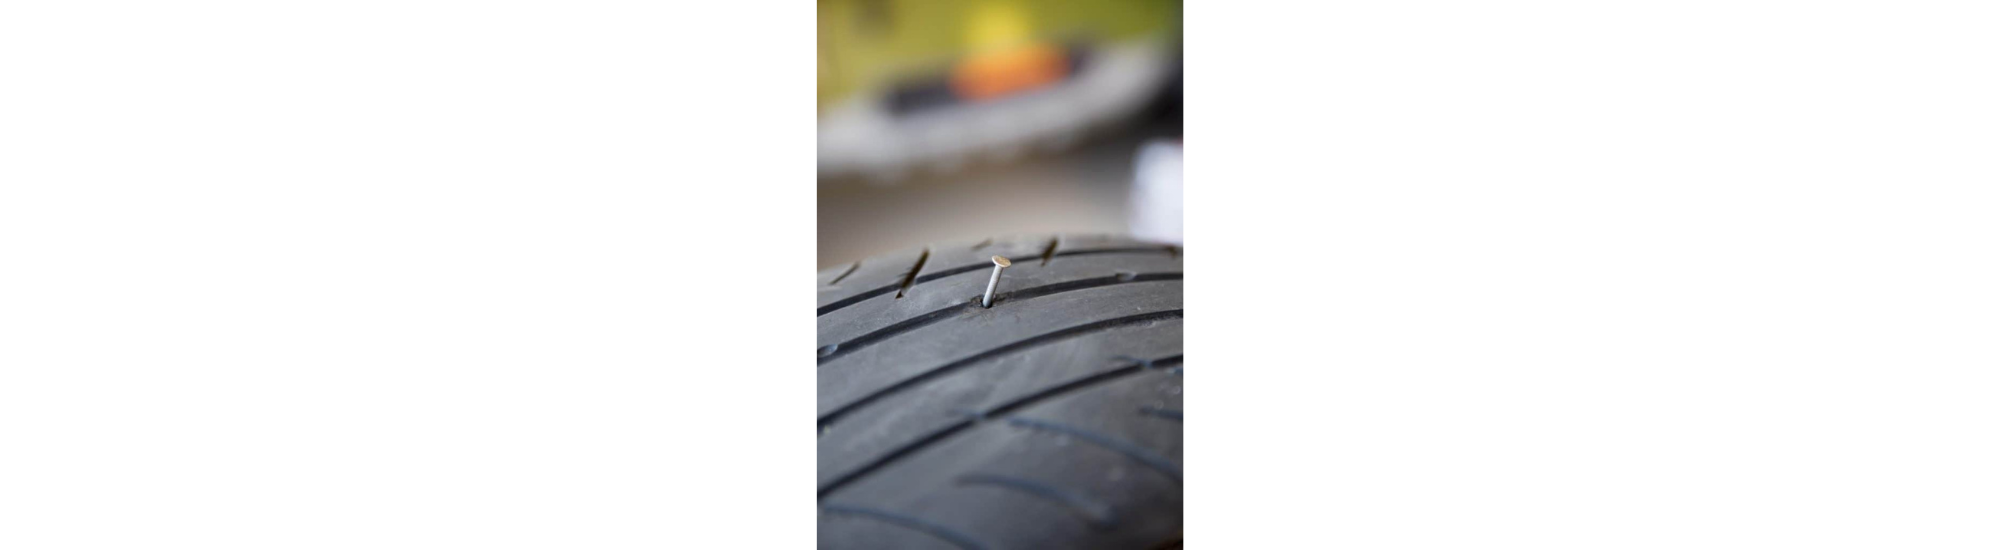 Valve de pneu : comment lui éviter de se détériorer ?